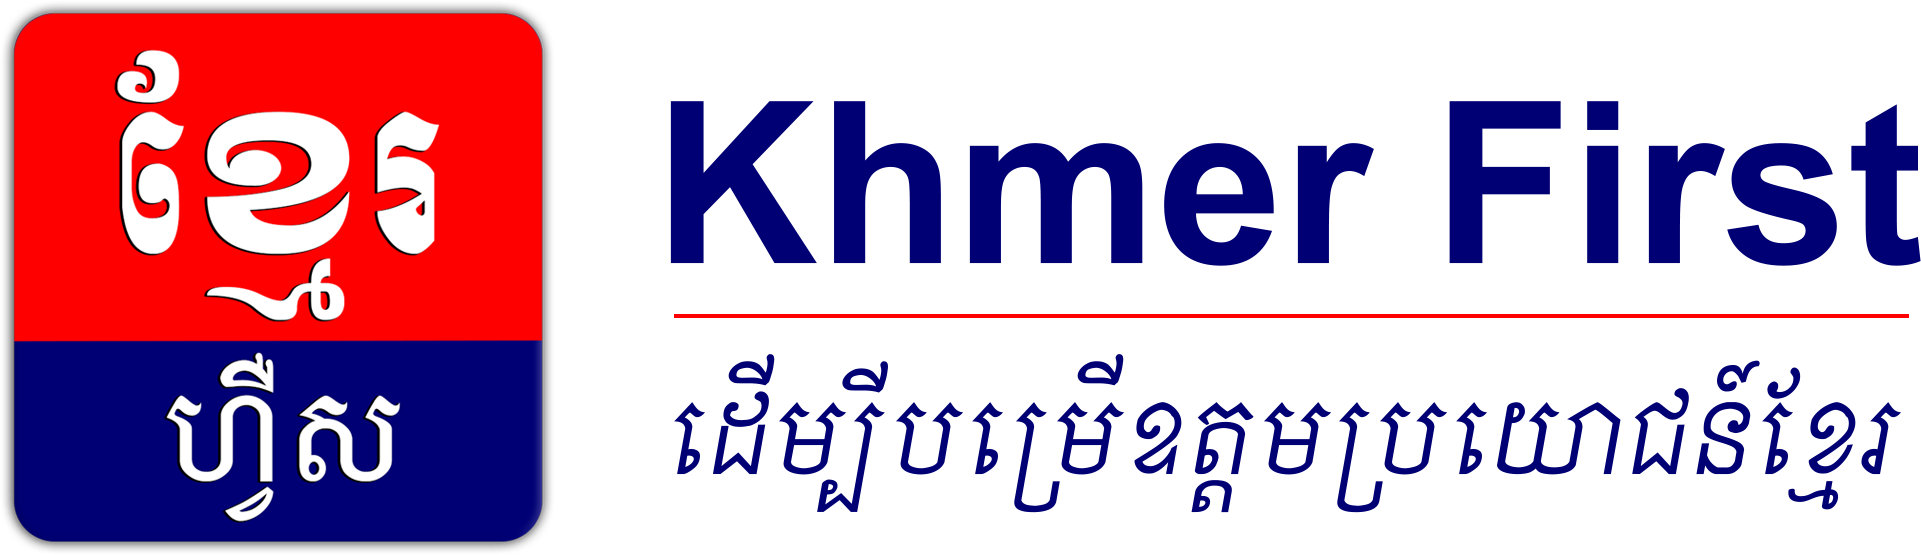 Khmer First